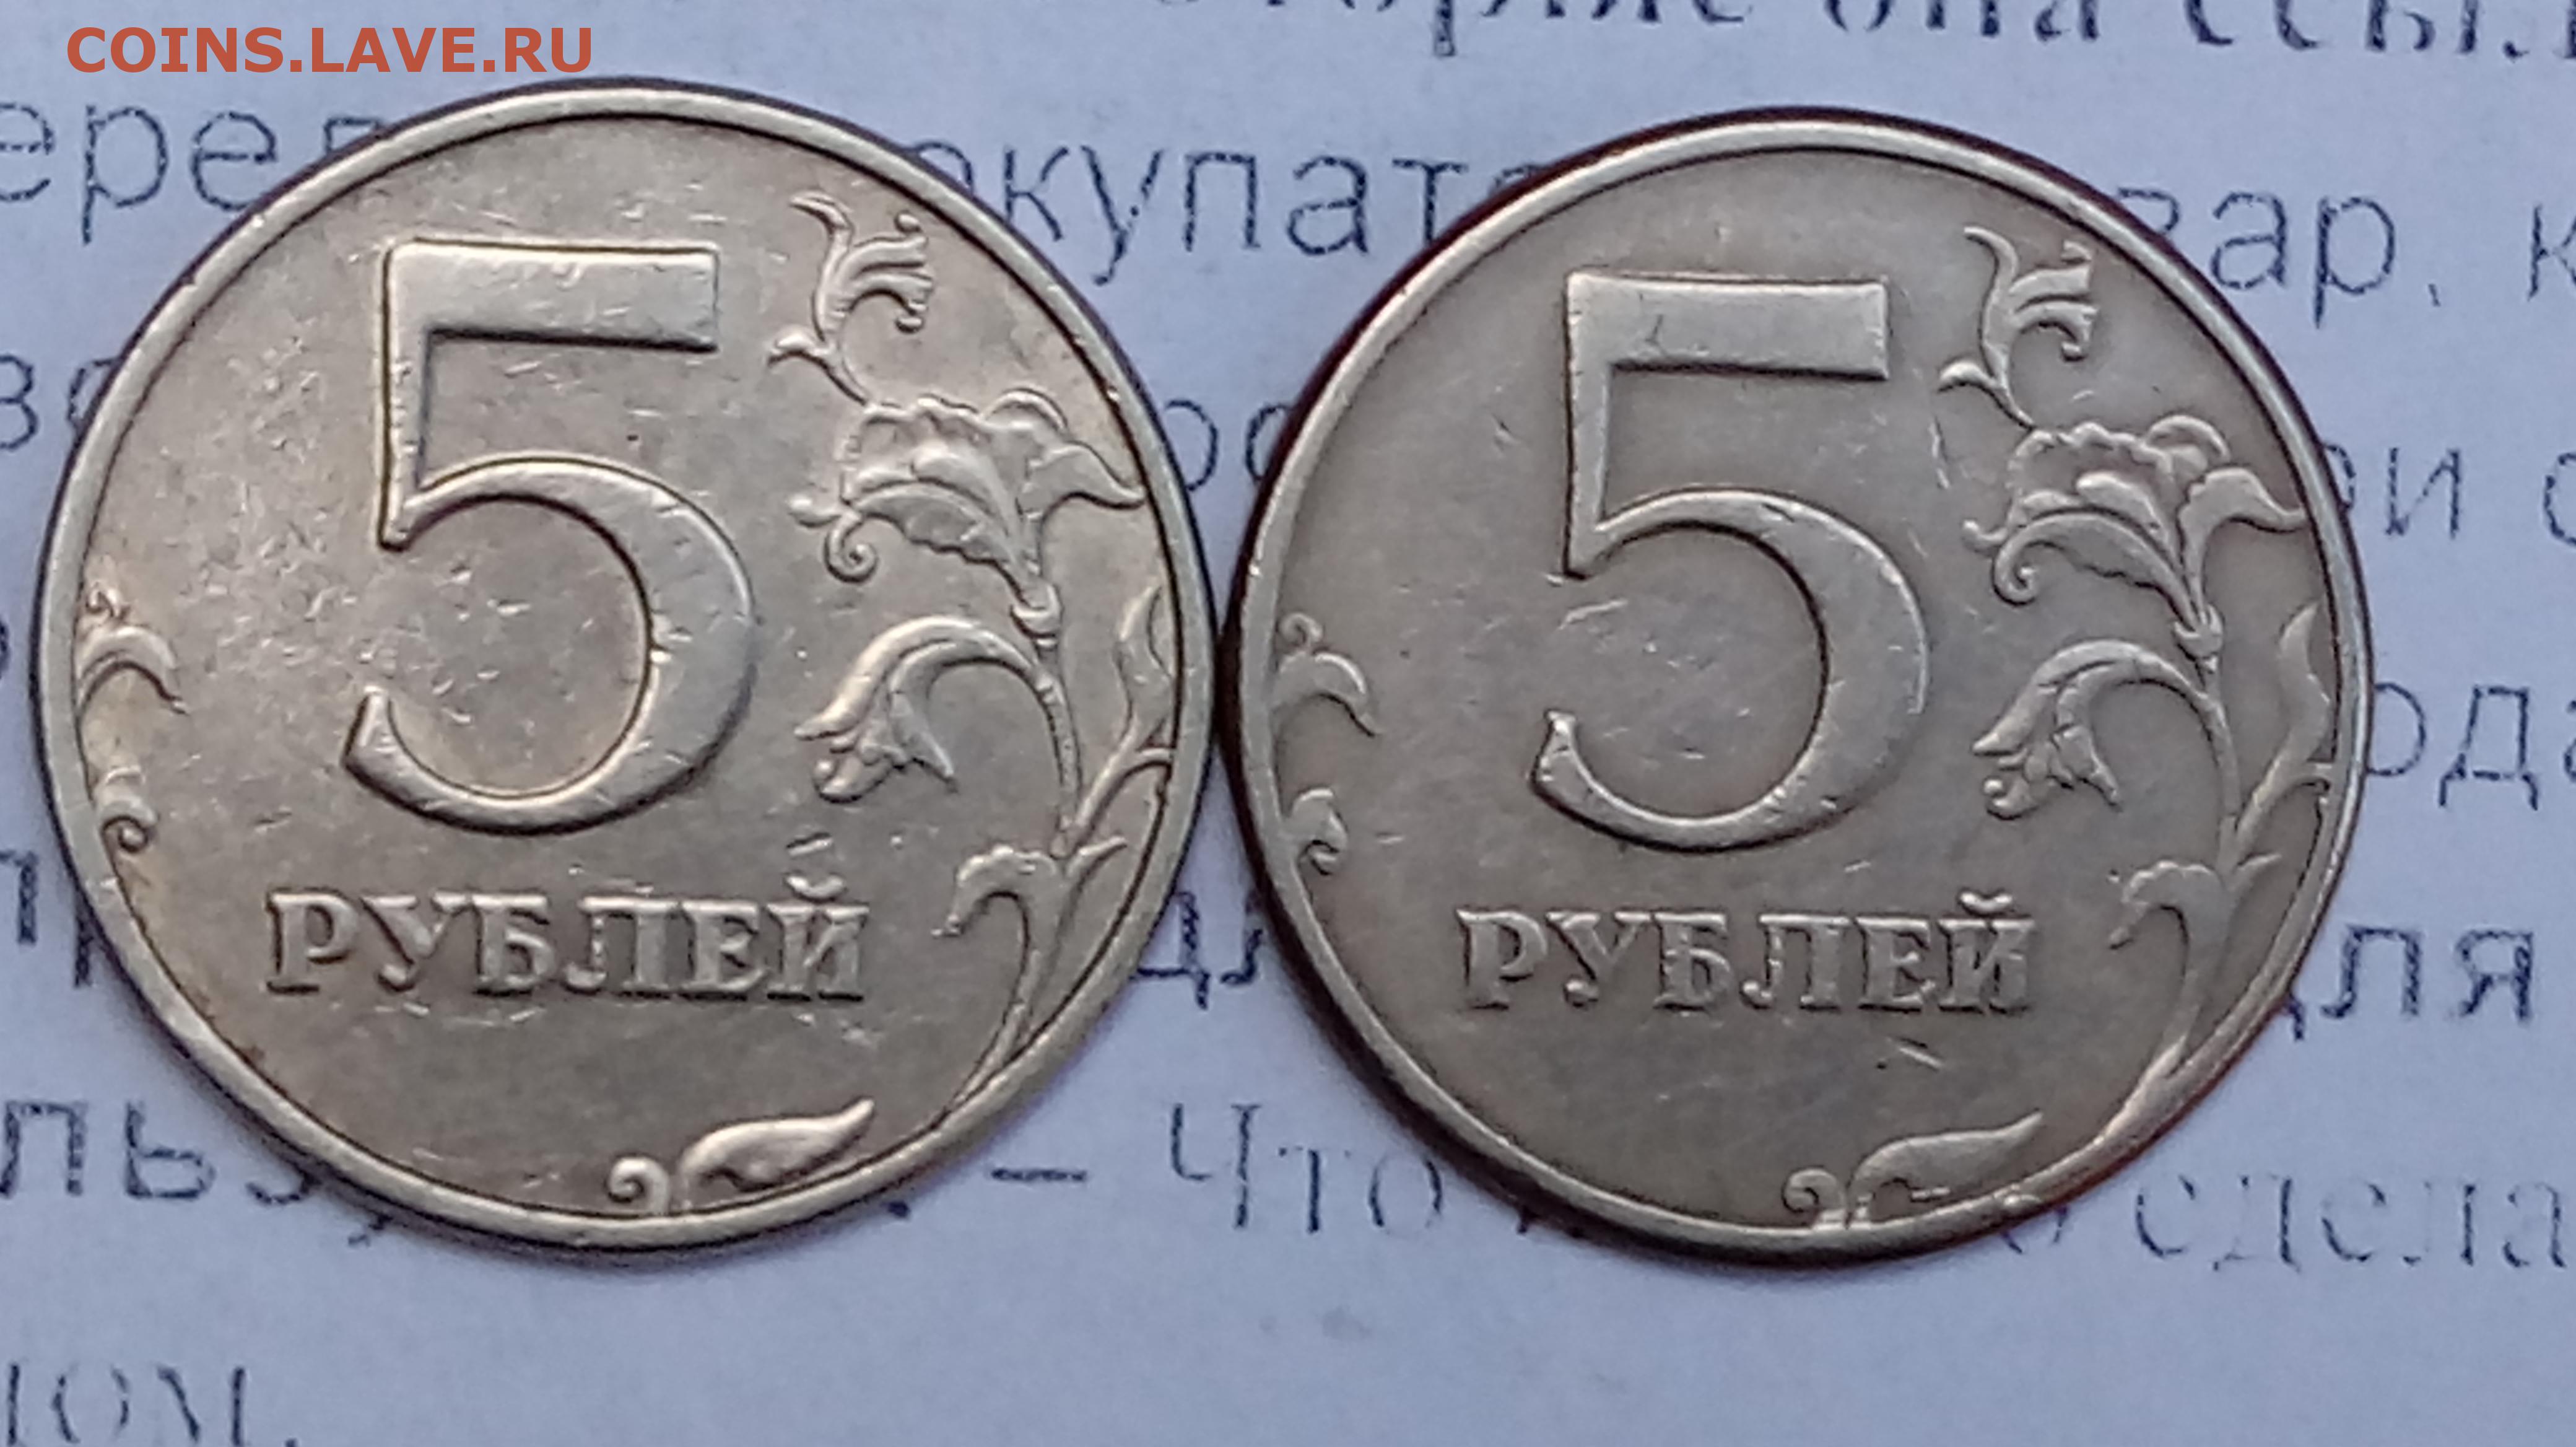 Зачем 5 рублей